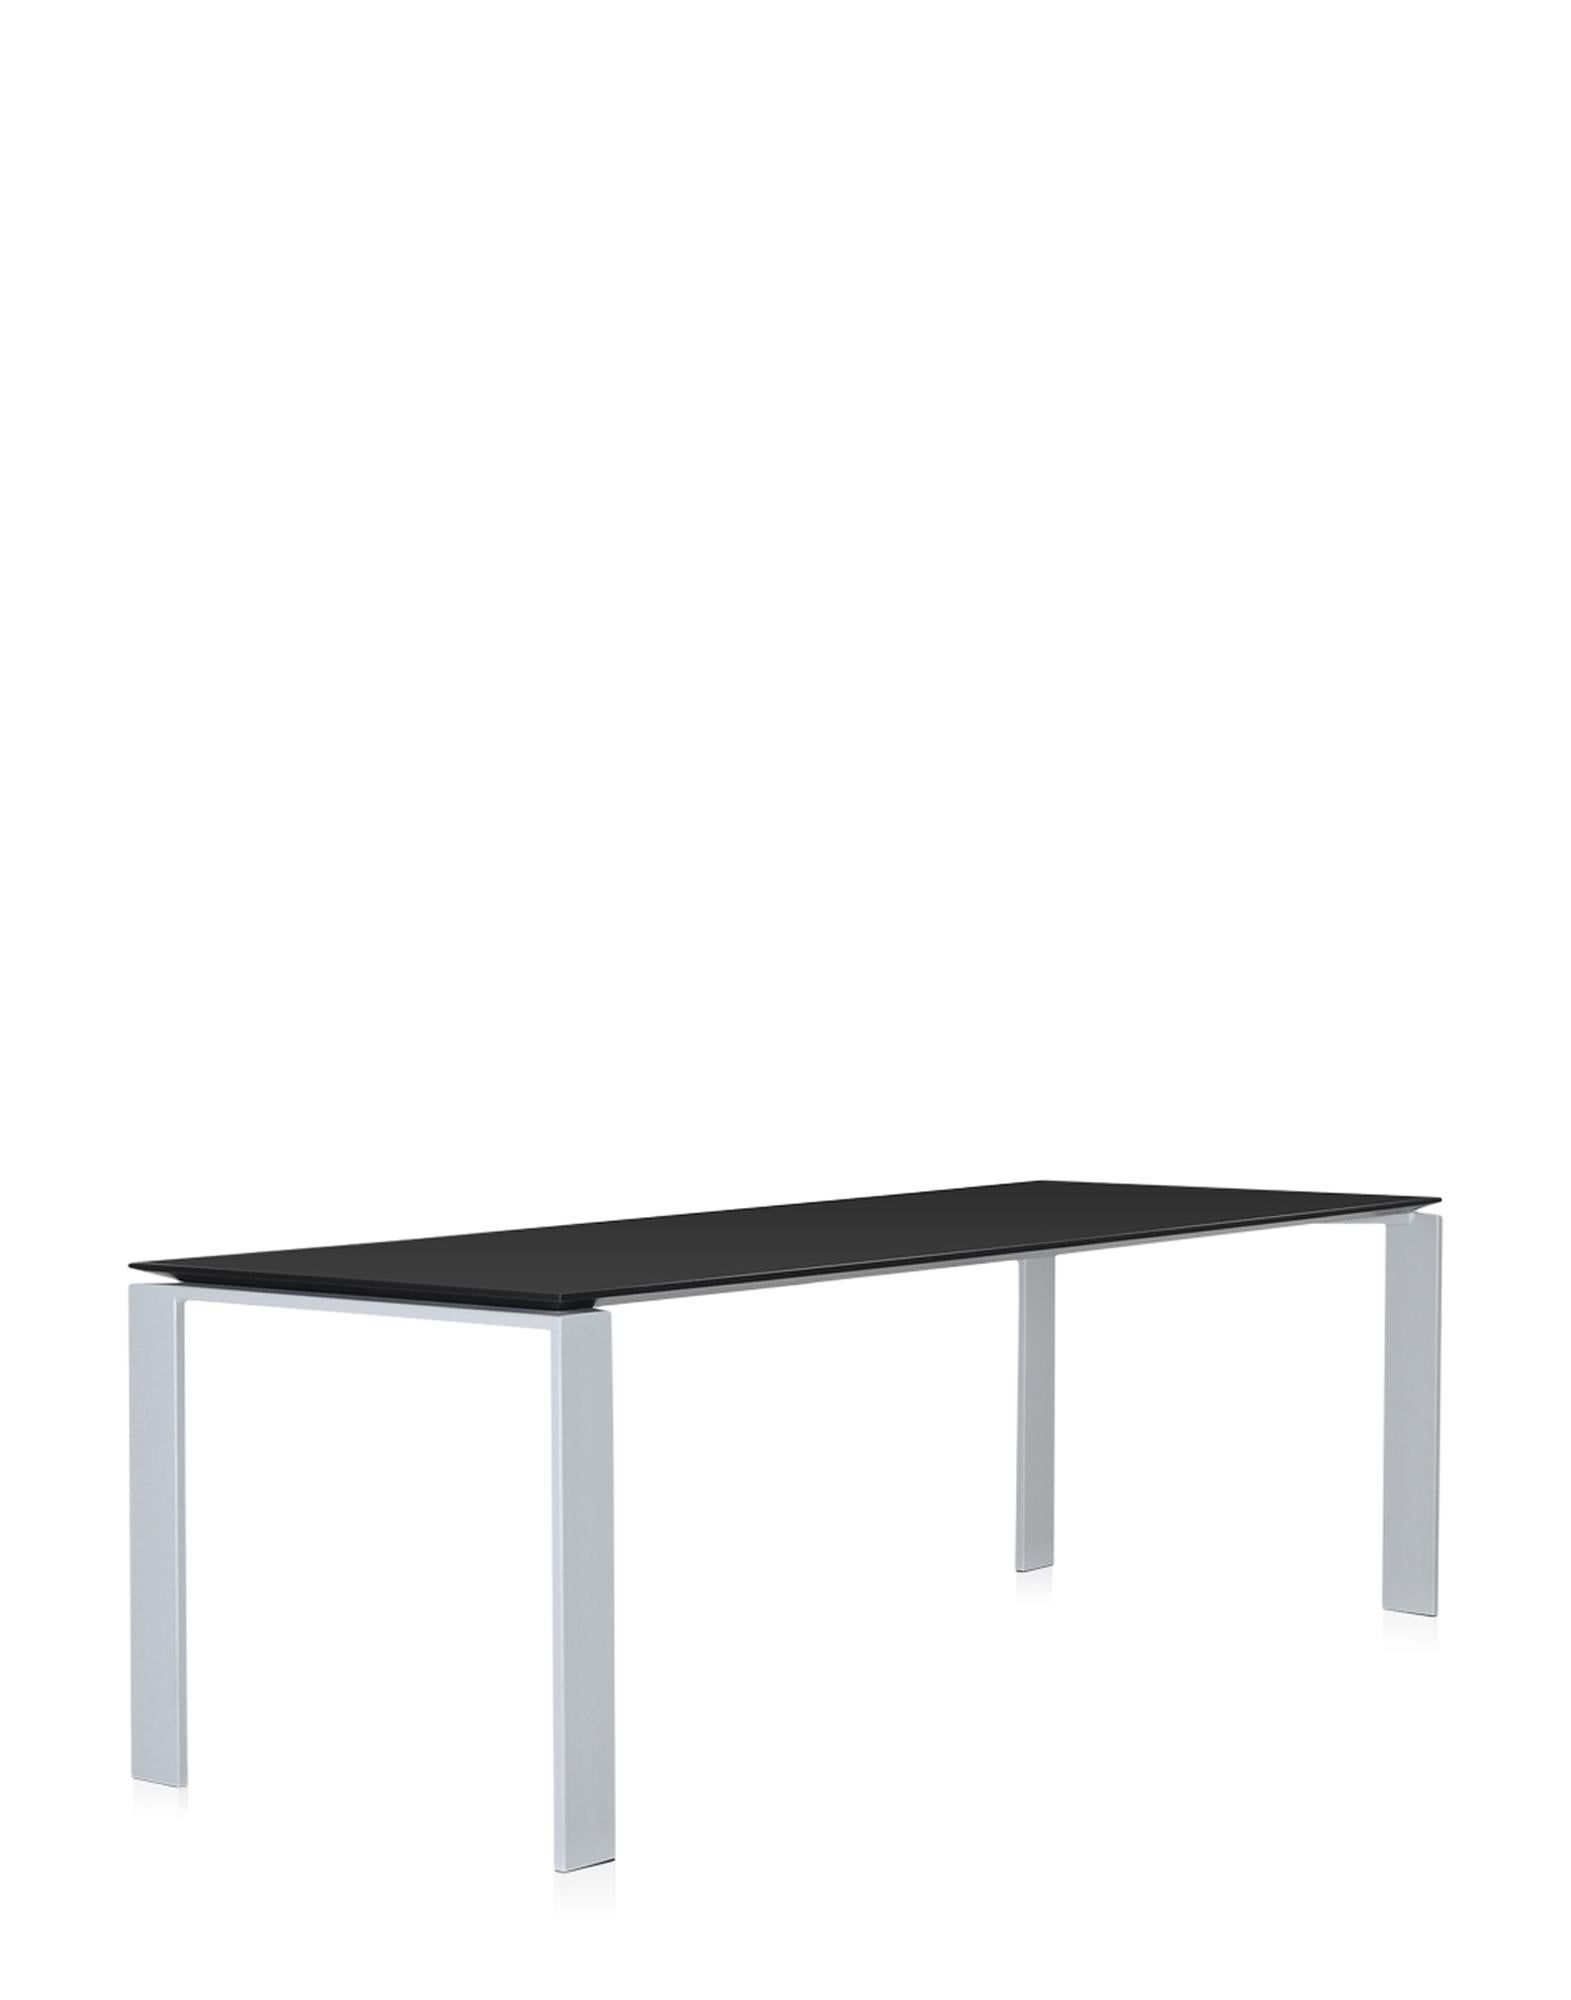 Cette table fonctionnelle et raffinée présente également un design géométrique strict. Grâce à l'élégante solution de design, la position du plateau mince permet de positionner facilement des tiroirs ou des meubles de rangement pour le matériel